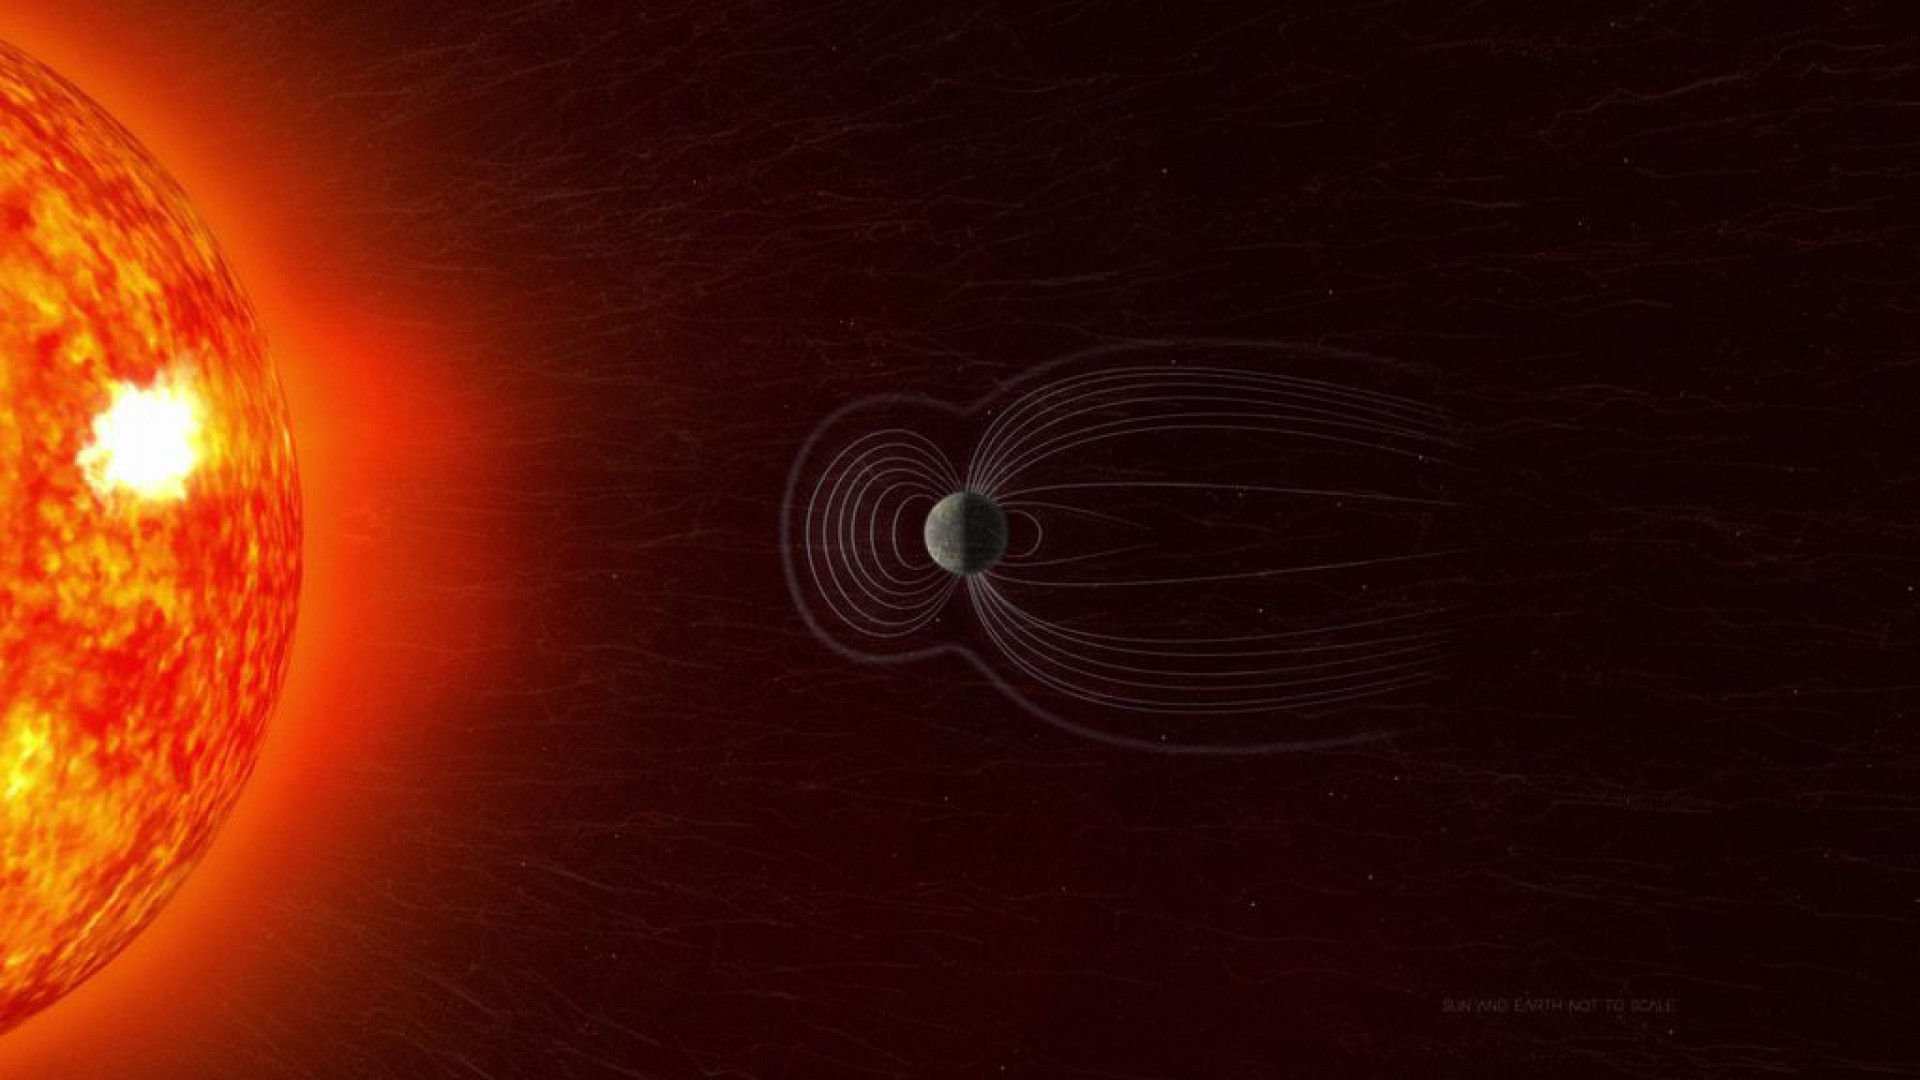  De acordo com a Nasa, a anomalia surge da inclinação do eixo magnético terrestre e do fluxo de metais derretidos no núcleo da Terra